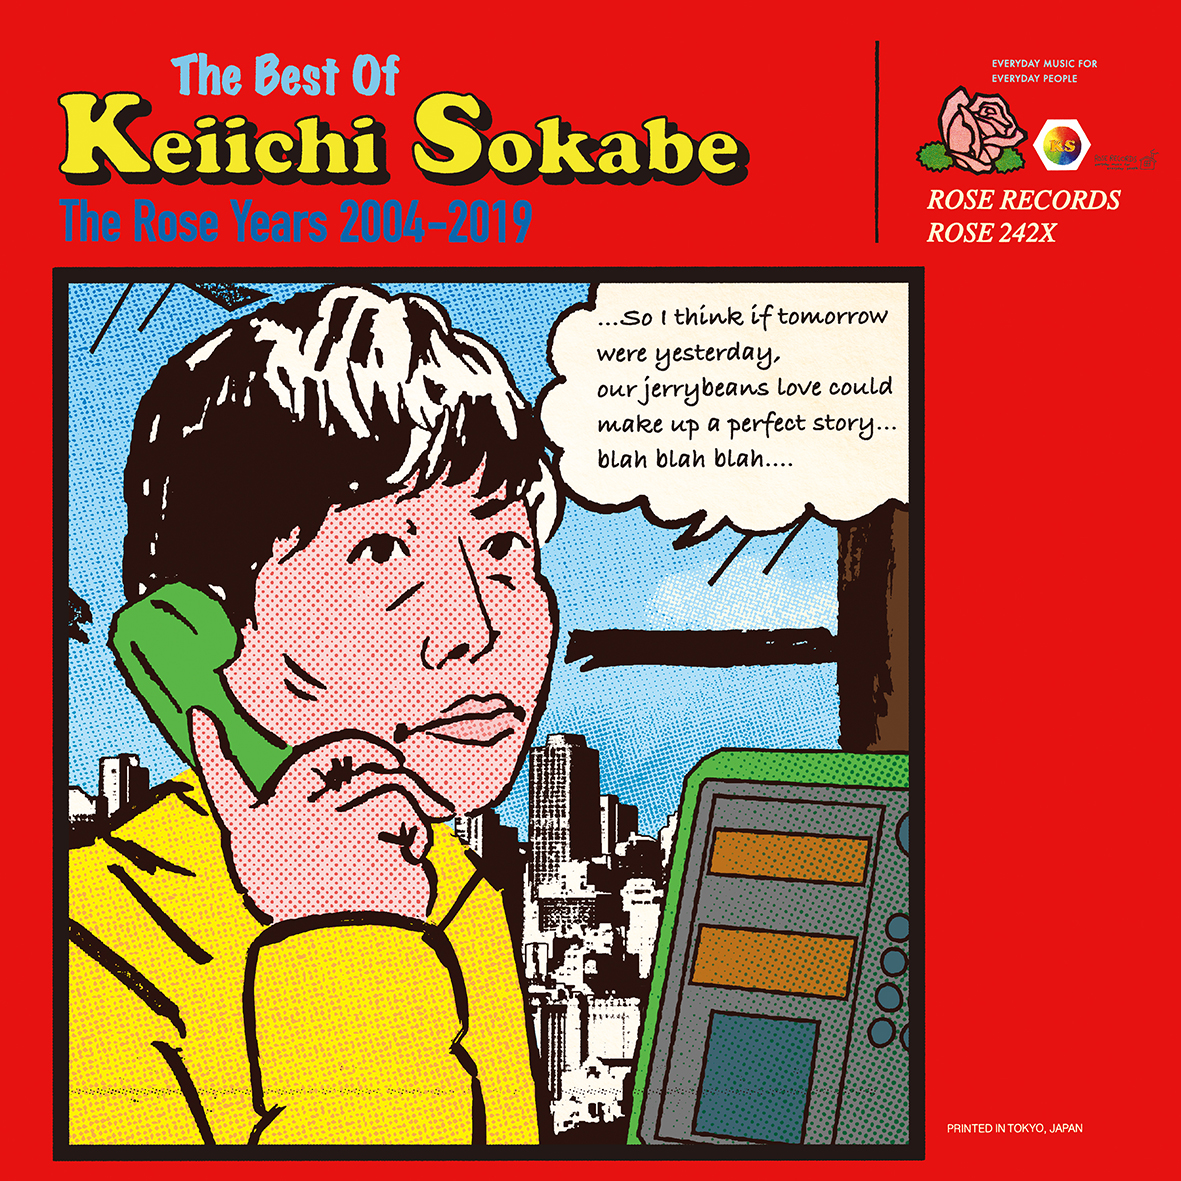 曽我部恵一 『The Best Of Keiichi Sokabe -The Rose Years 2004-2019 